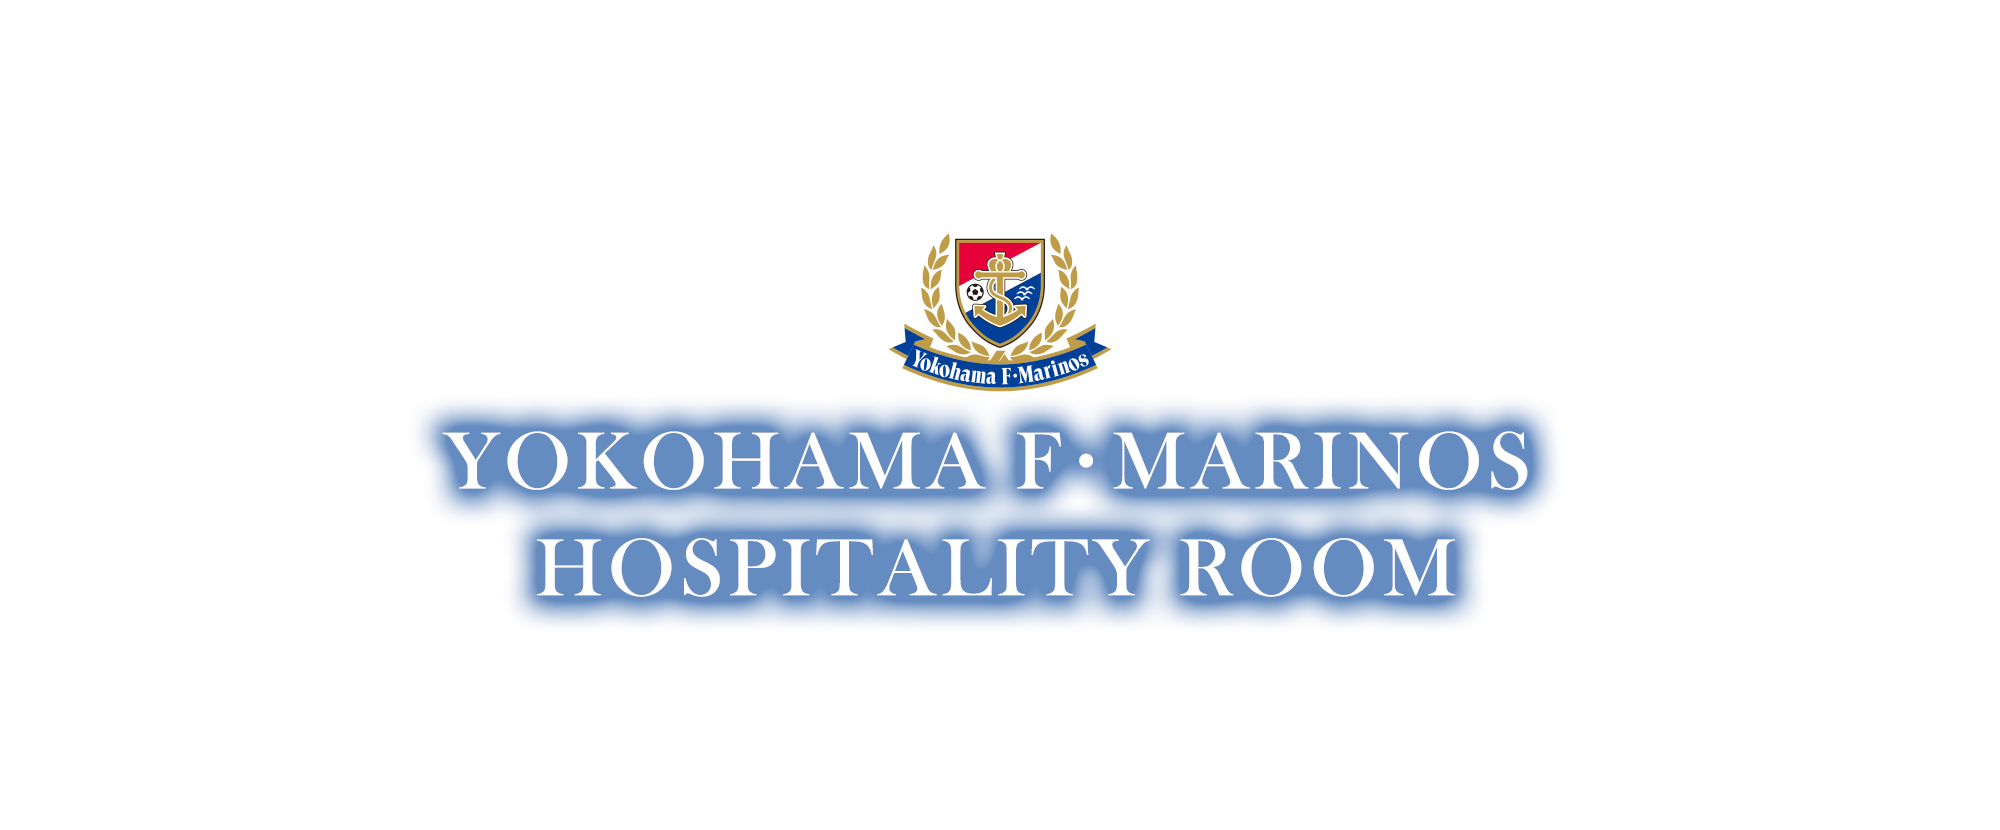 YOKOHAMA F･MARINOS HOSPITALITY ROOM